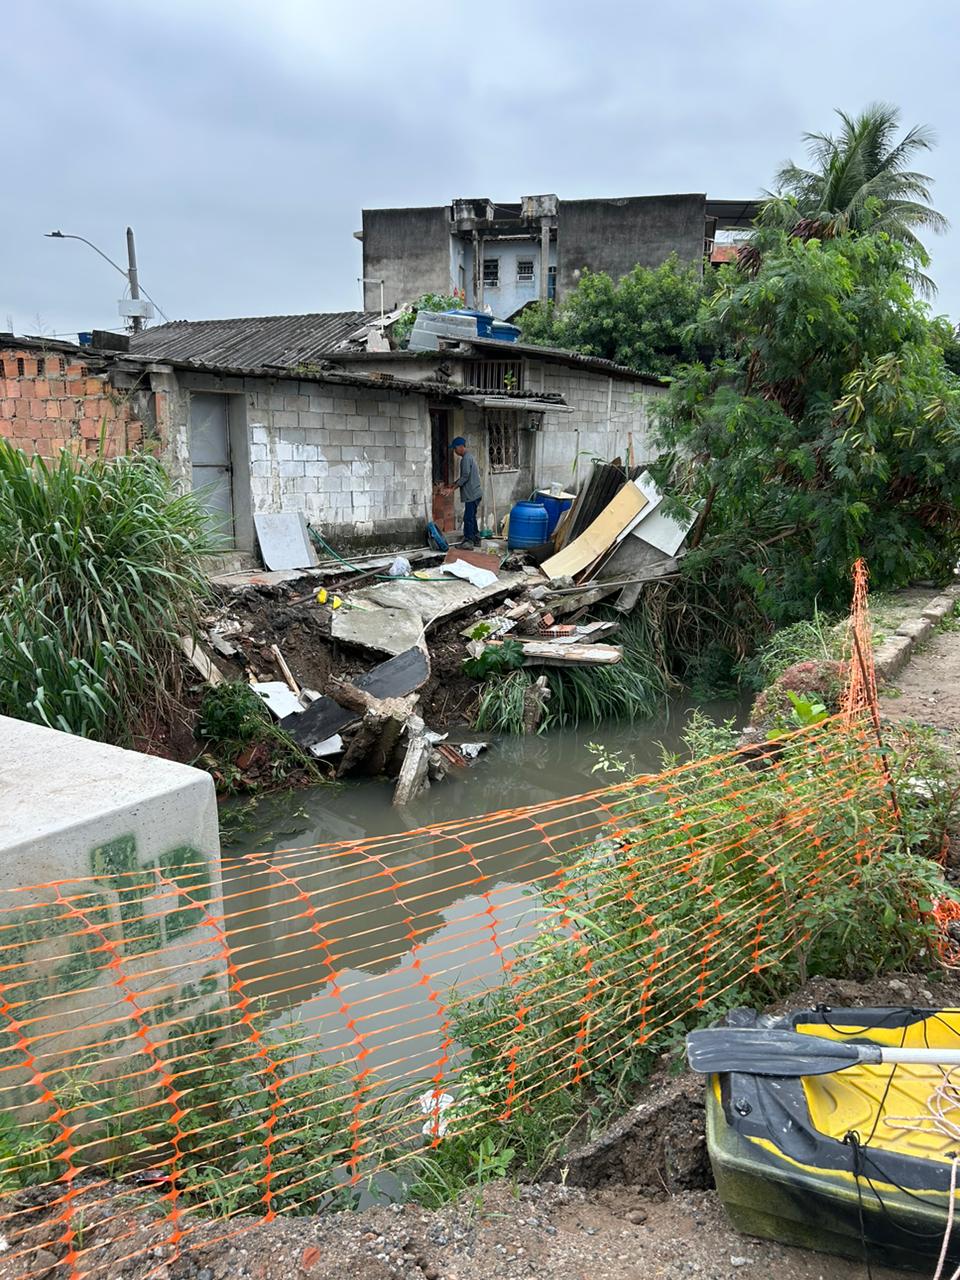 Idosa que caiu em canal em Caxias após fortes chuvas segue desaparecida (Foto: Fabio Peixoto/ Super Rádio Tupi)